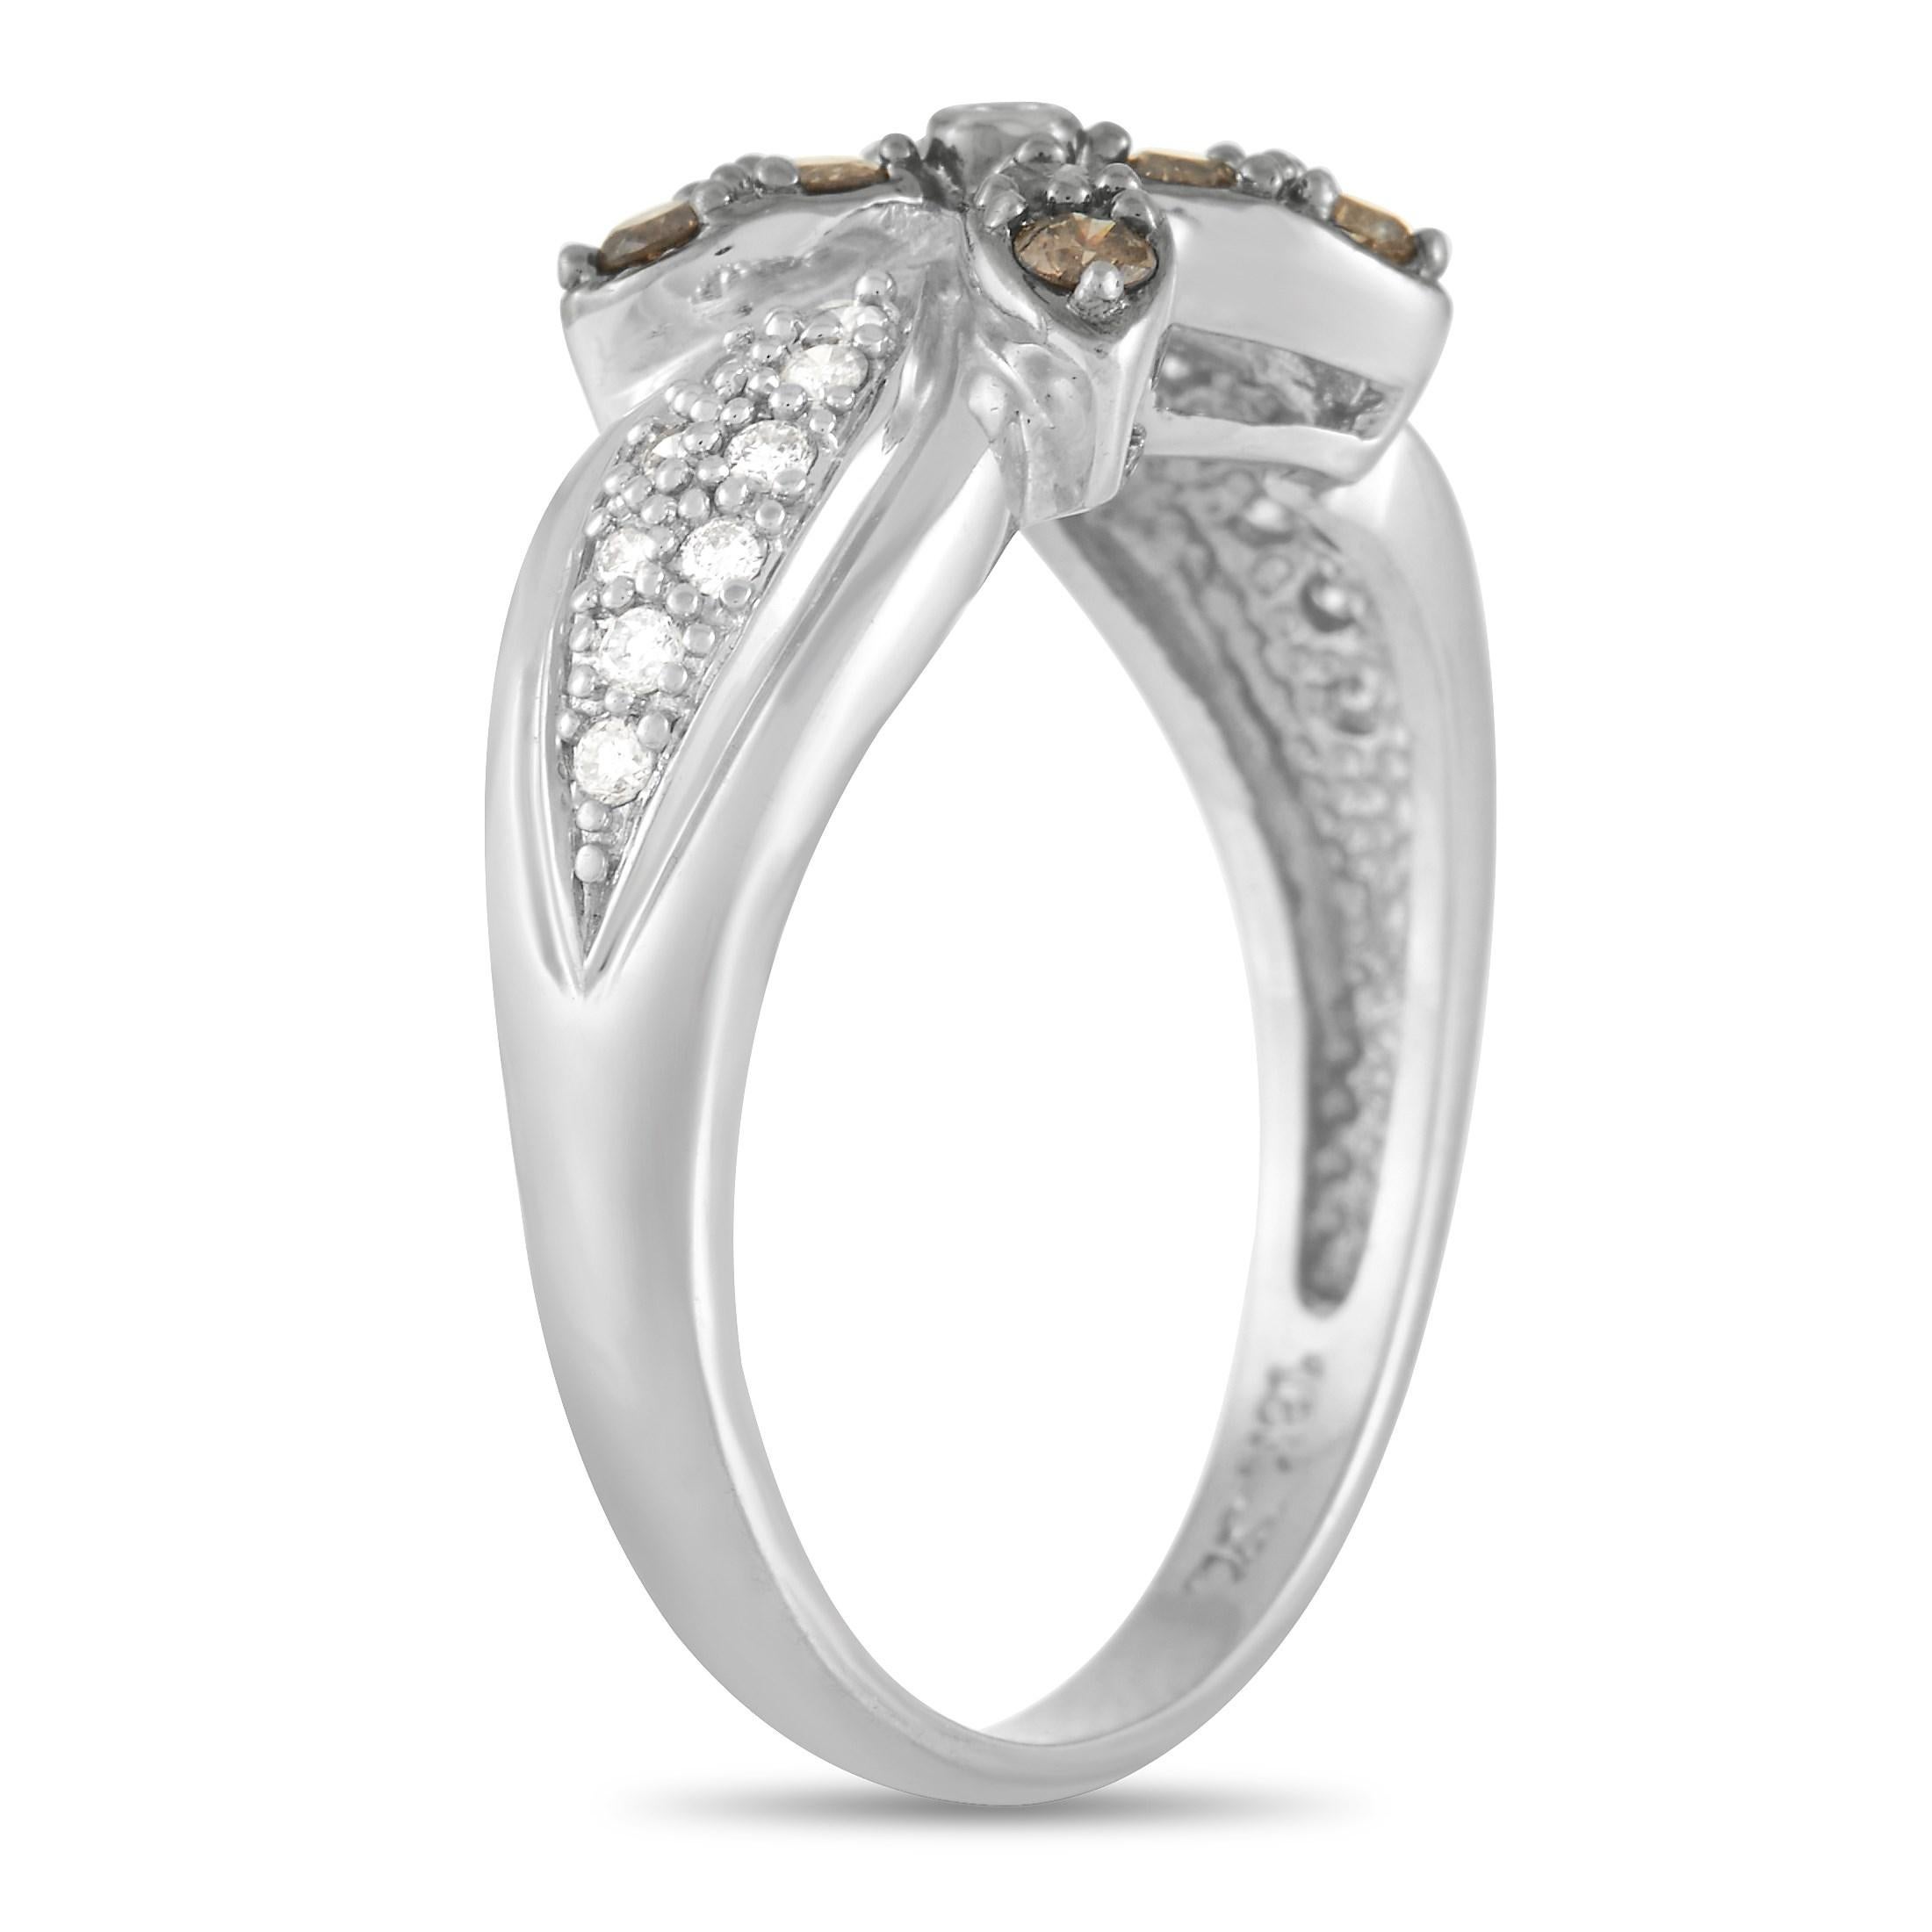 Dieser Ring aus 18-karätigem Weißgold von Le Vain zeichnet sich durch ein wunderschönes Blumenmotiv aus. Das 3 mm breite Band dieses makellosen Schmuckstücks ist mit schimmernden weißen Diamanten besetzt, während braune Diamanten den